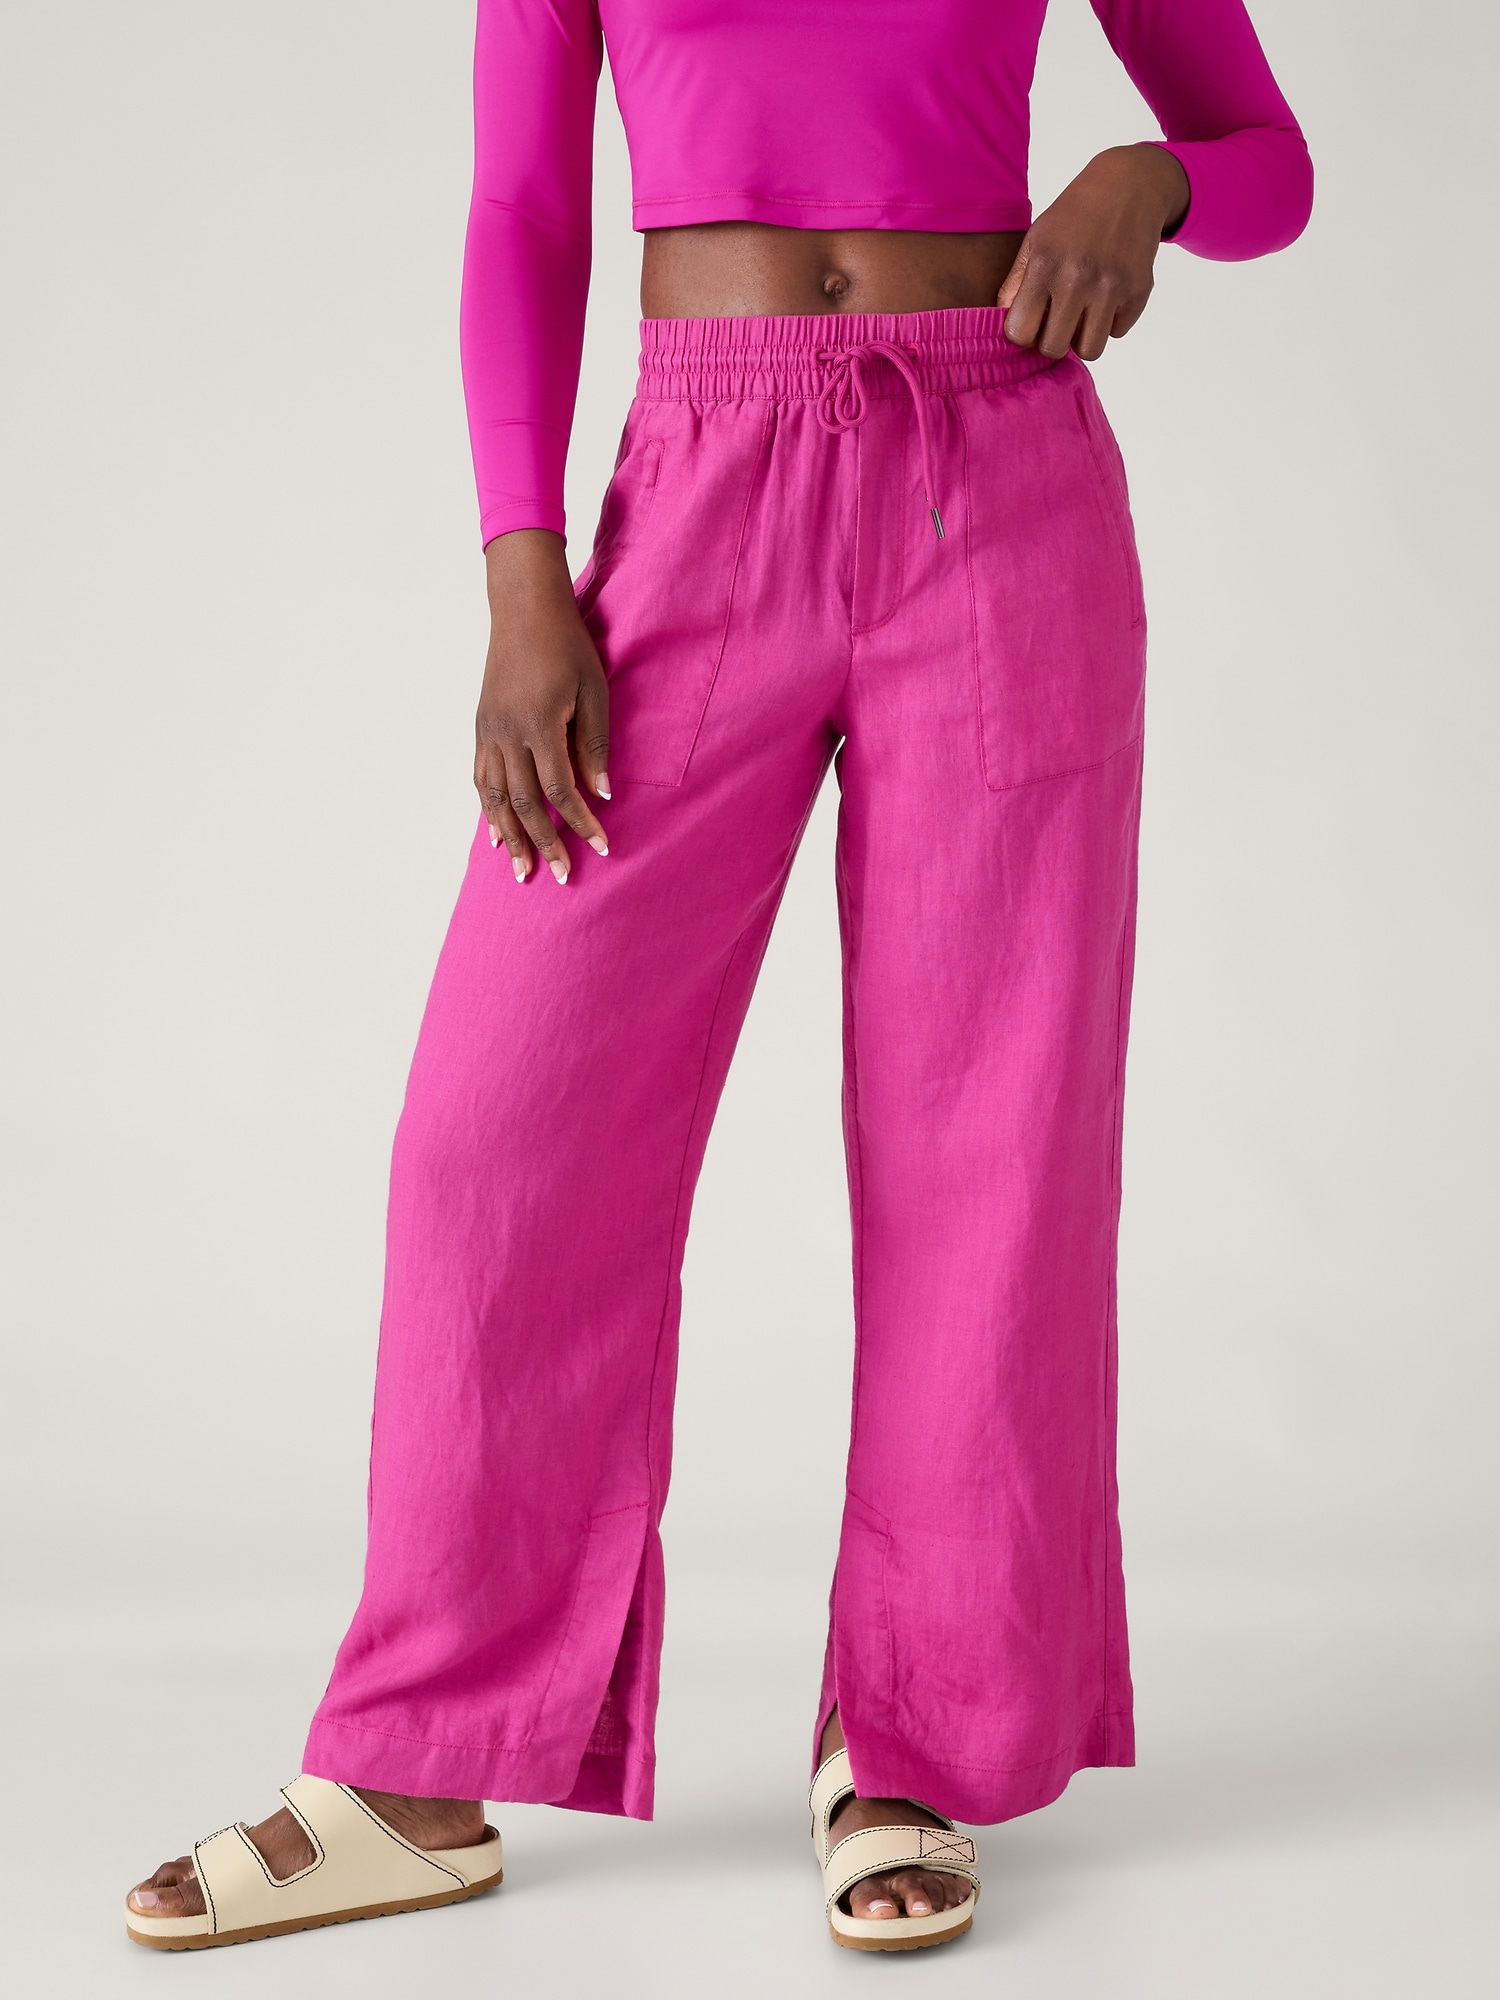 Wide leg linen pants, Pink Linen